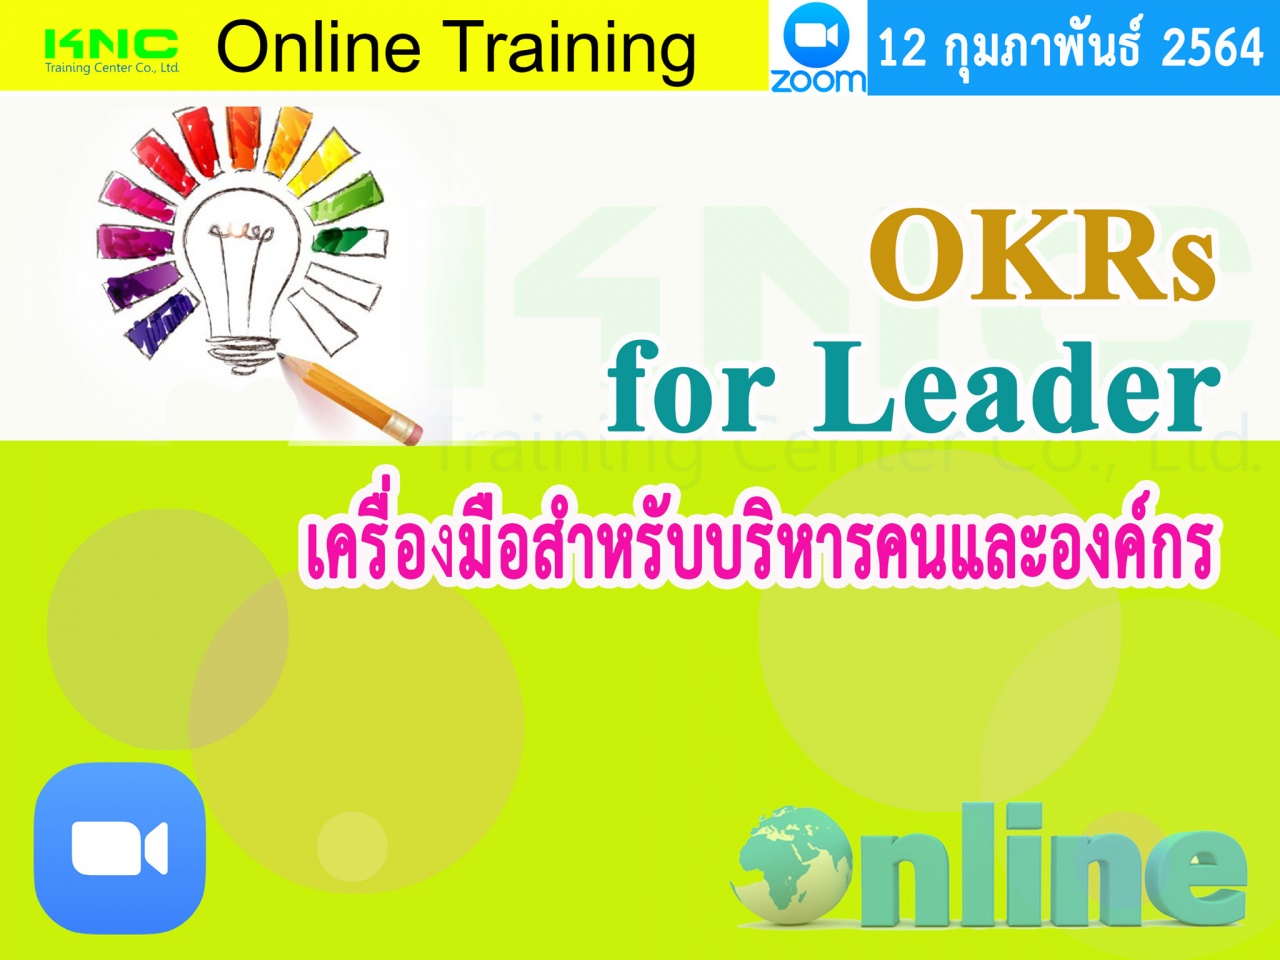 สัมมนา Online : OKRs for Leader เครื่องมือสำหรับบริหารคนและองค์กร